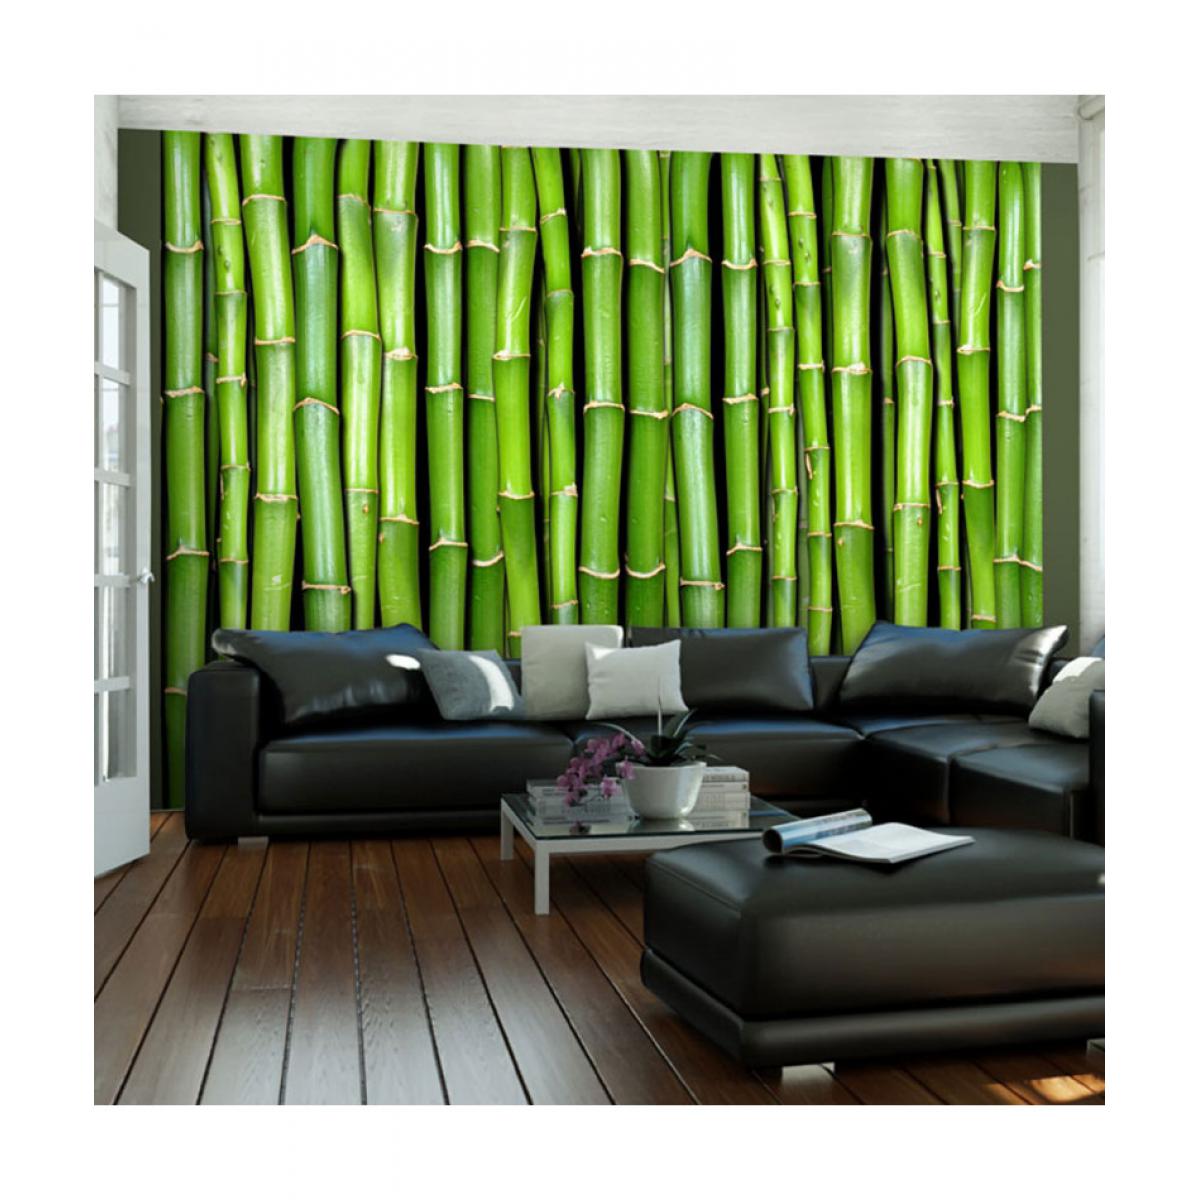 Artgeist - Papier peint - Mur vert bambou 300x231 - Papier peint